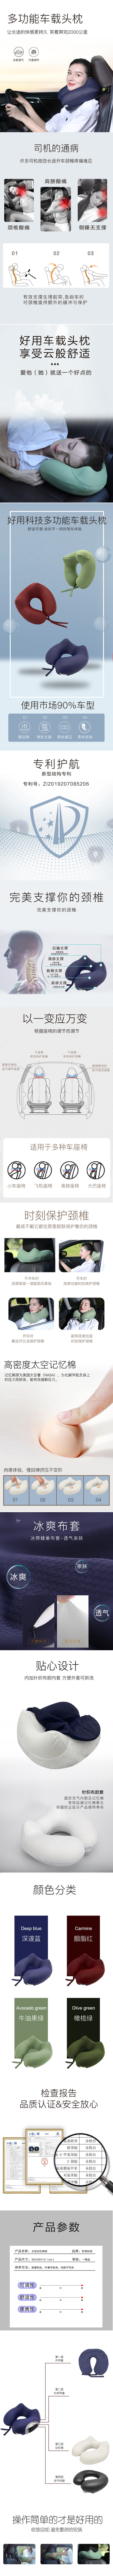 车用头枕价格_头枕 车用相关-广州好用科技有限公司